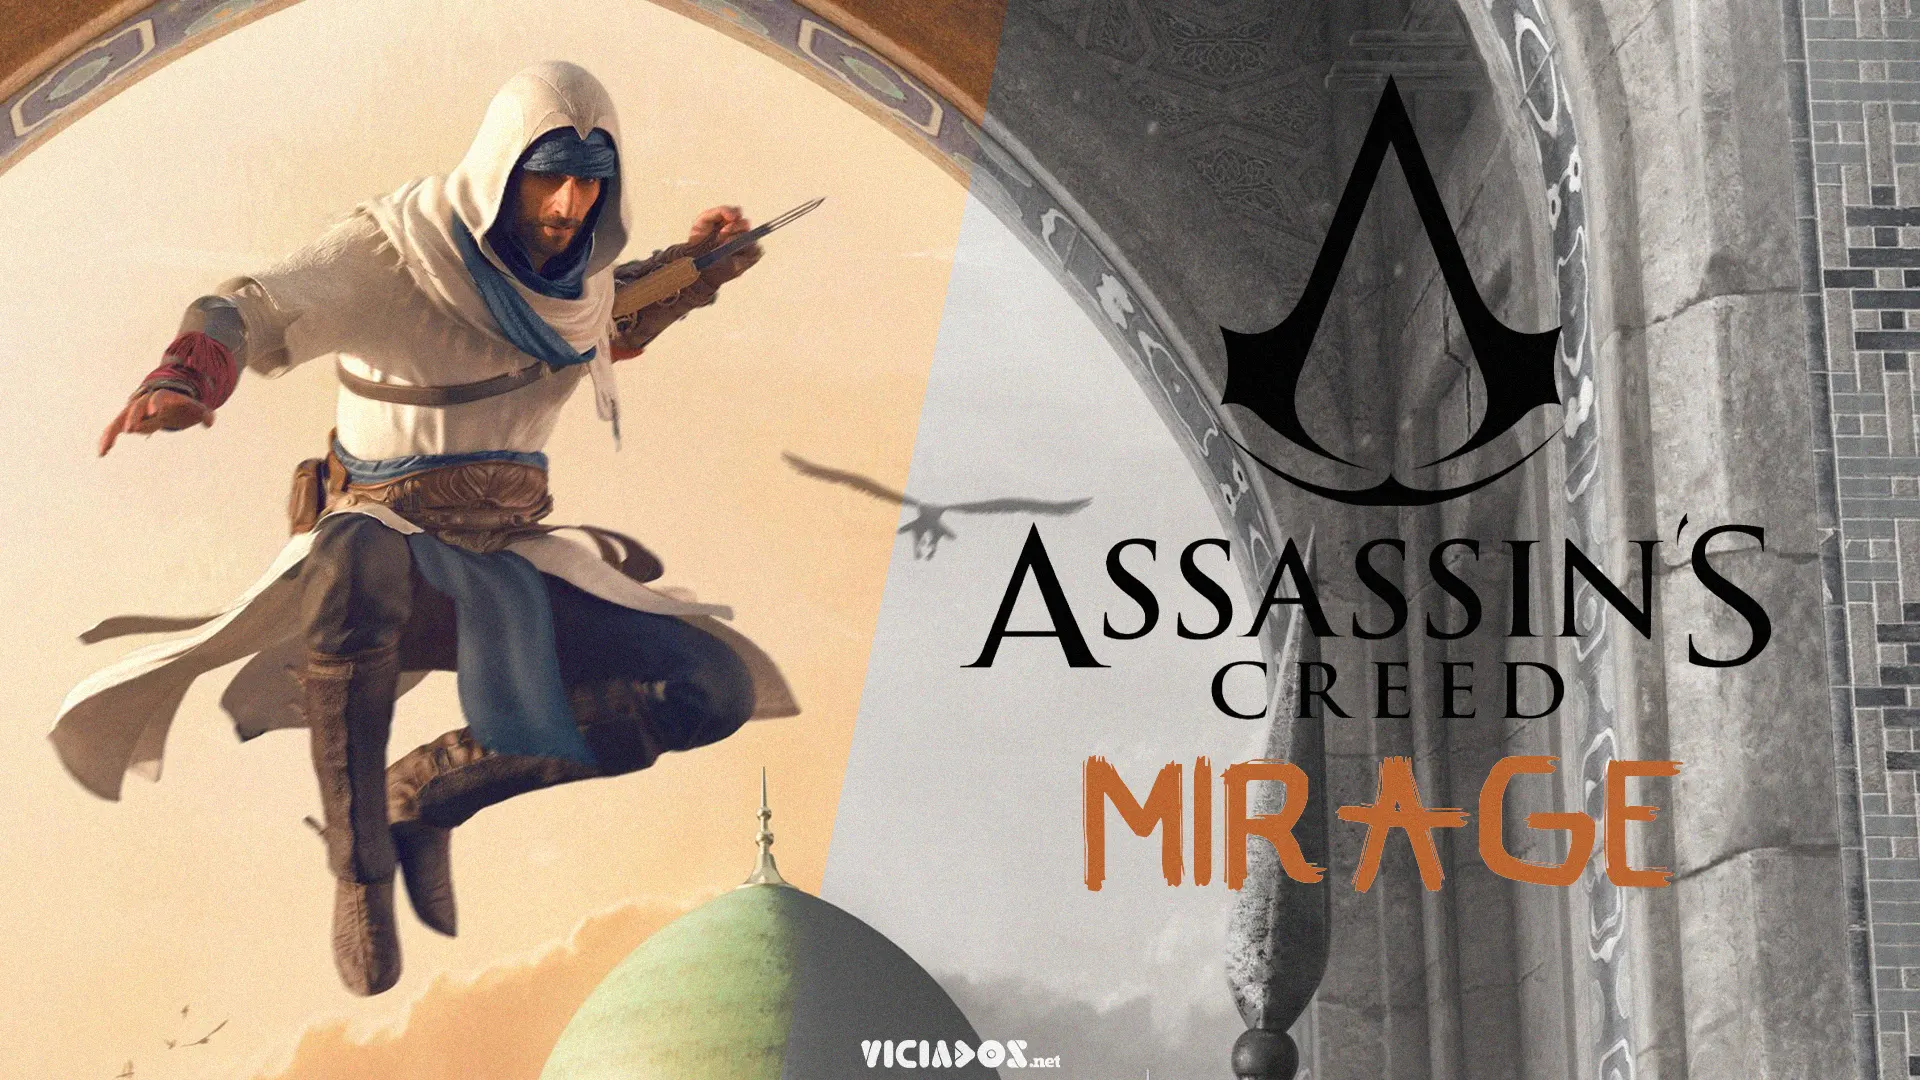 Assassin's Creed: Mirage | Vazam algumas informações sobre o novo título 2022 Viciados